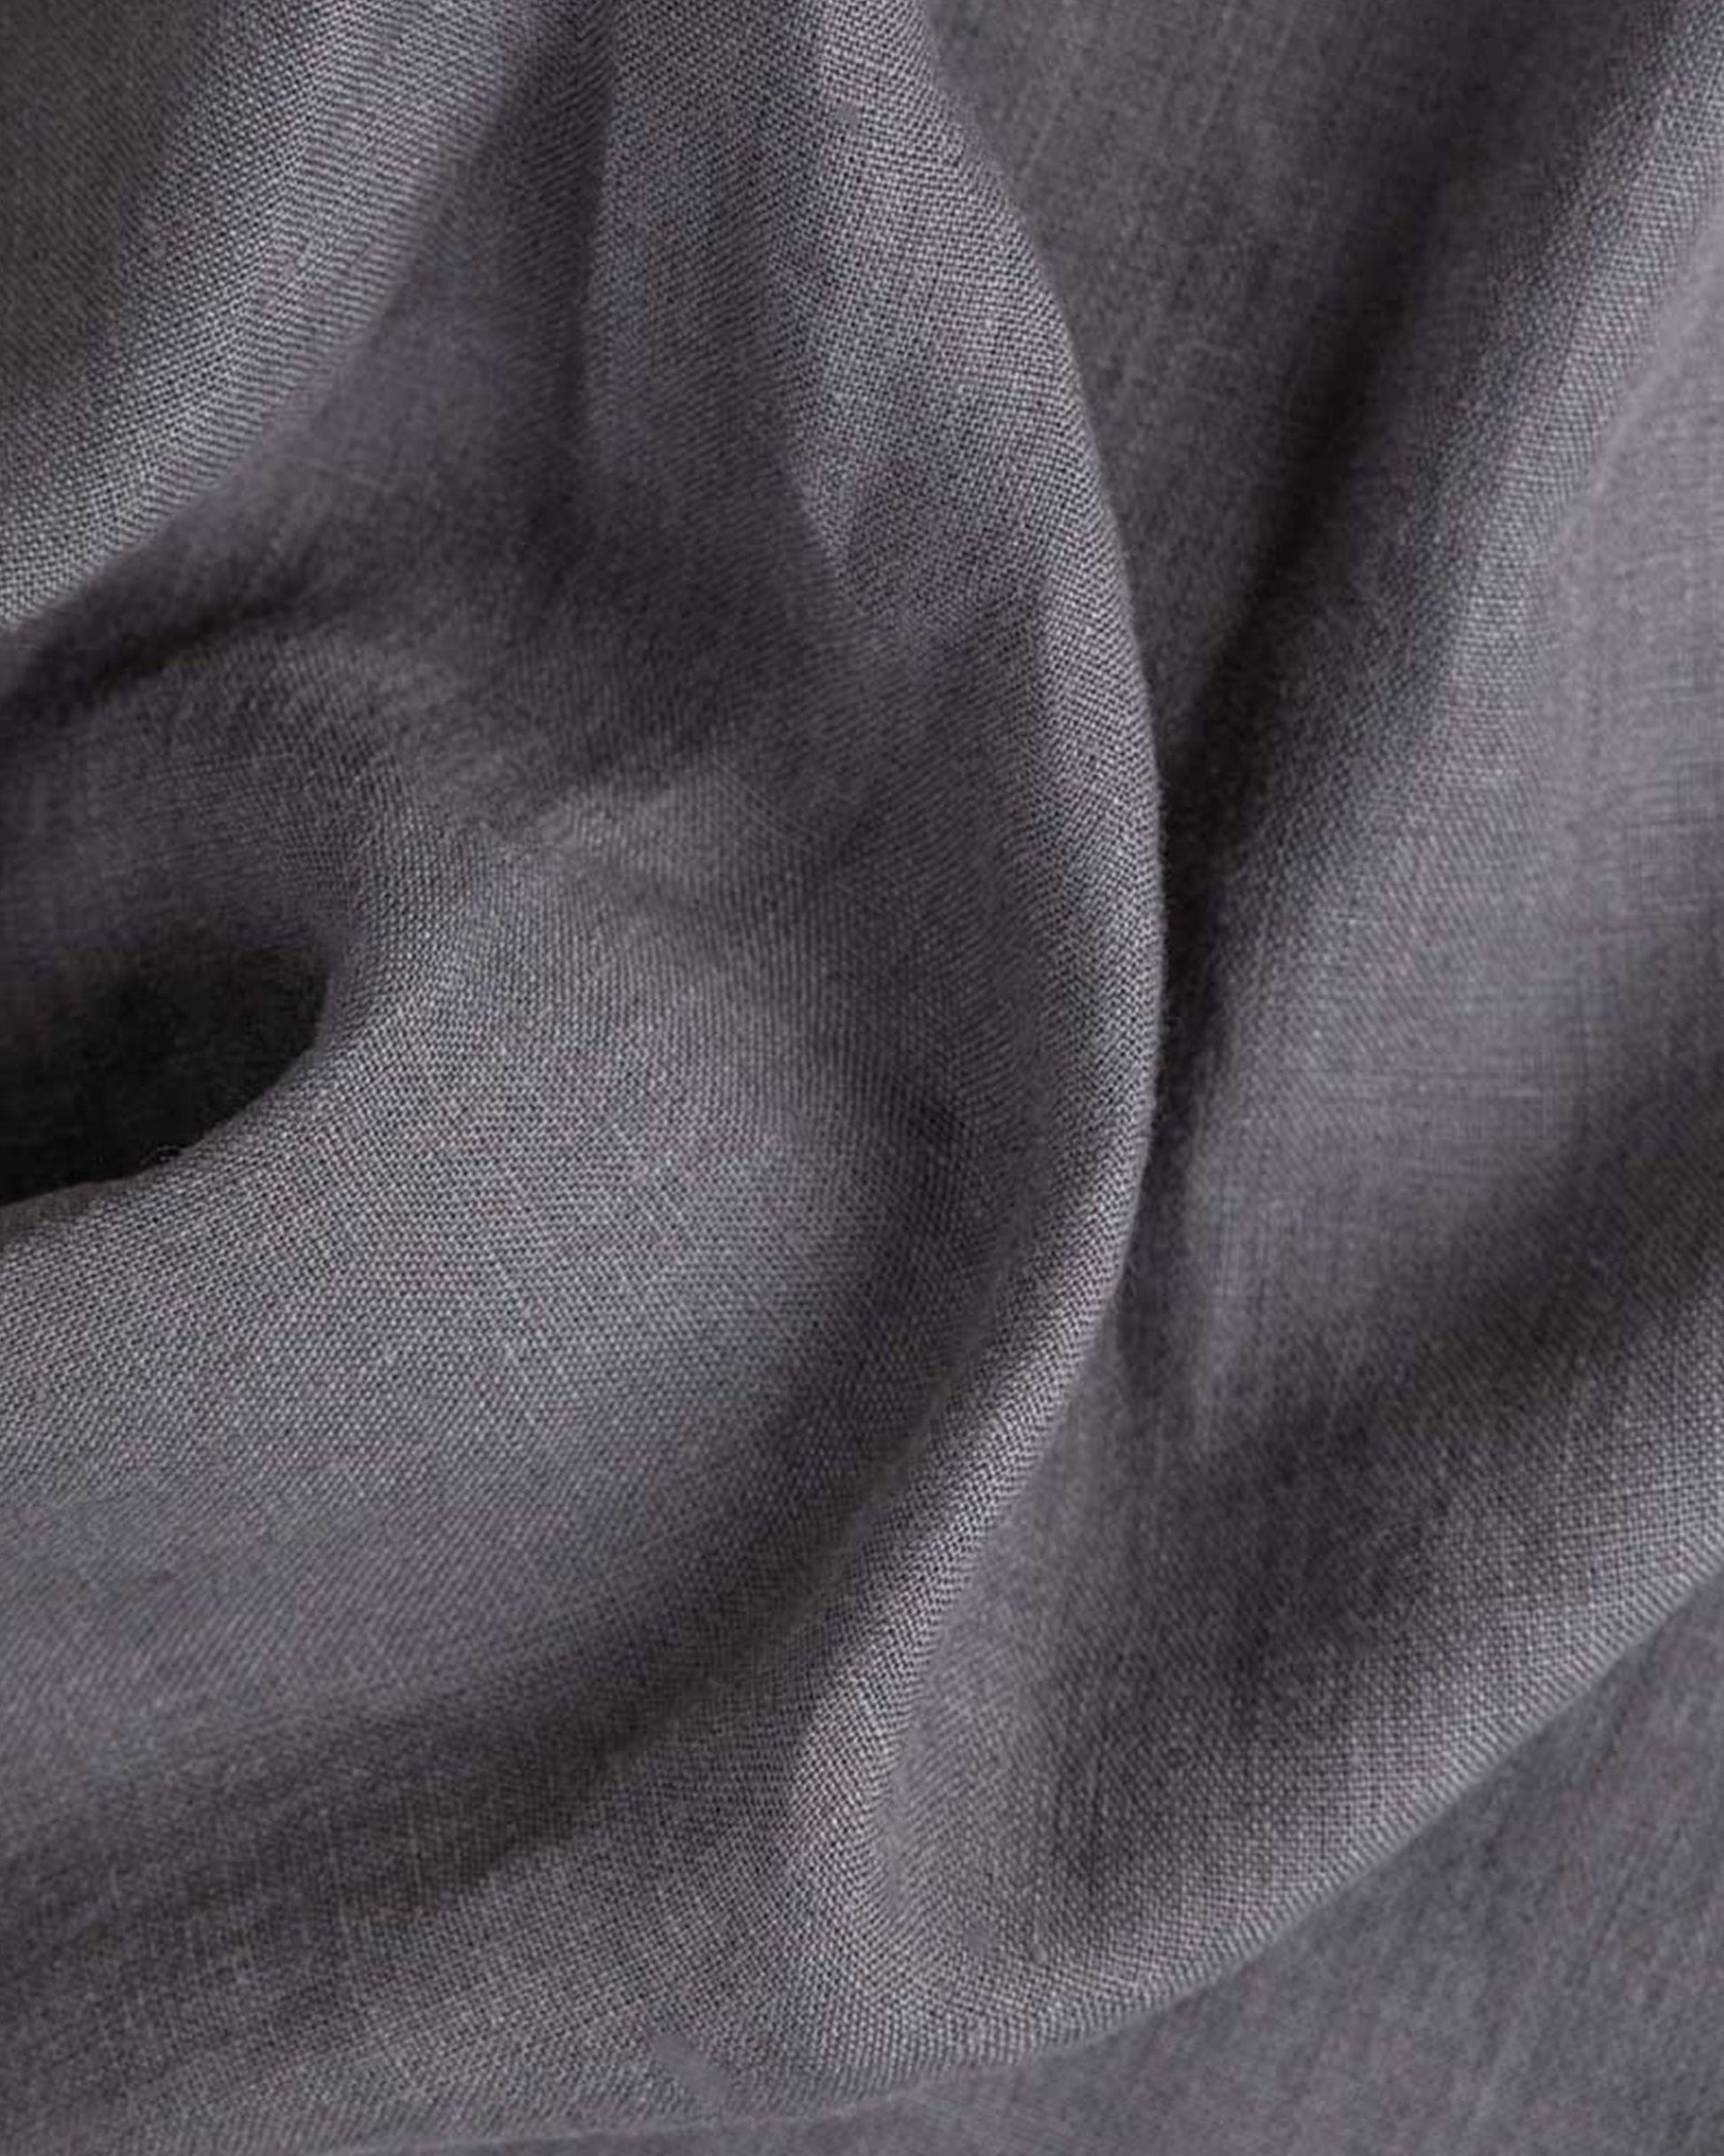 Charcoal gray linen duvet cover - MagicLinen